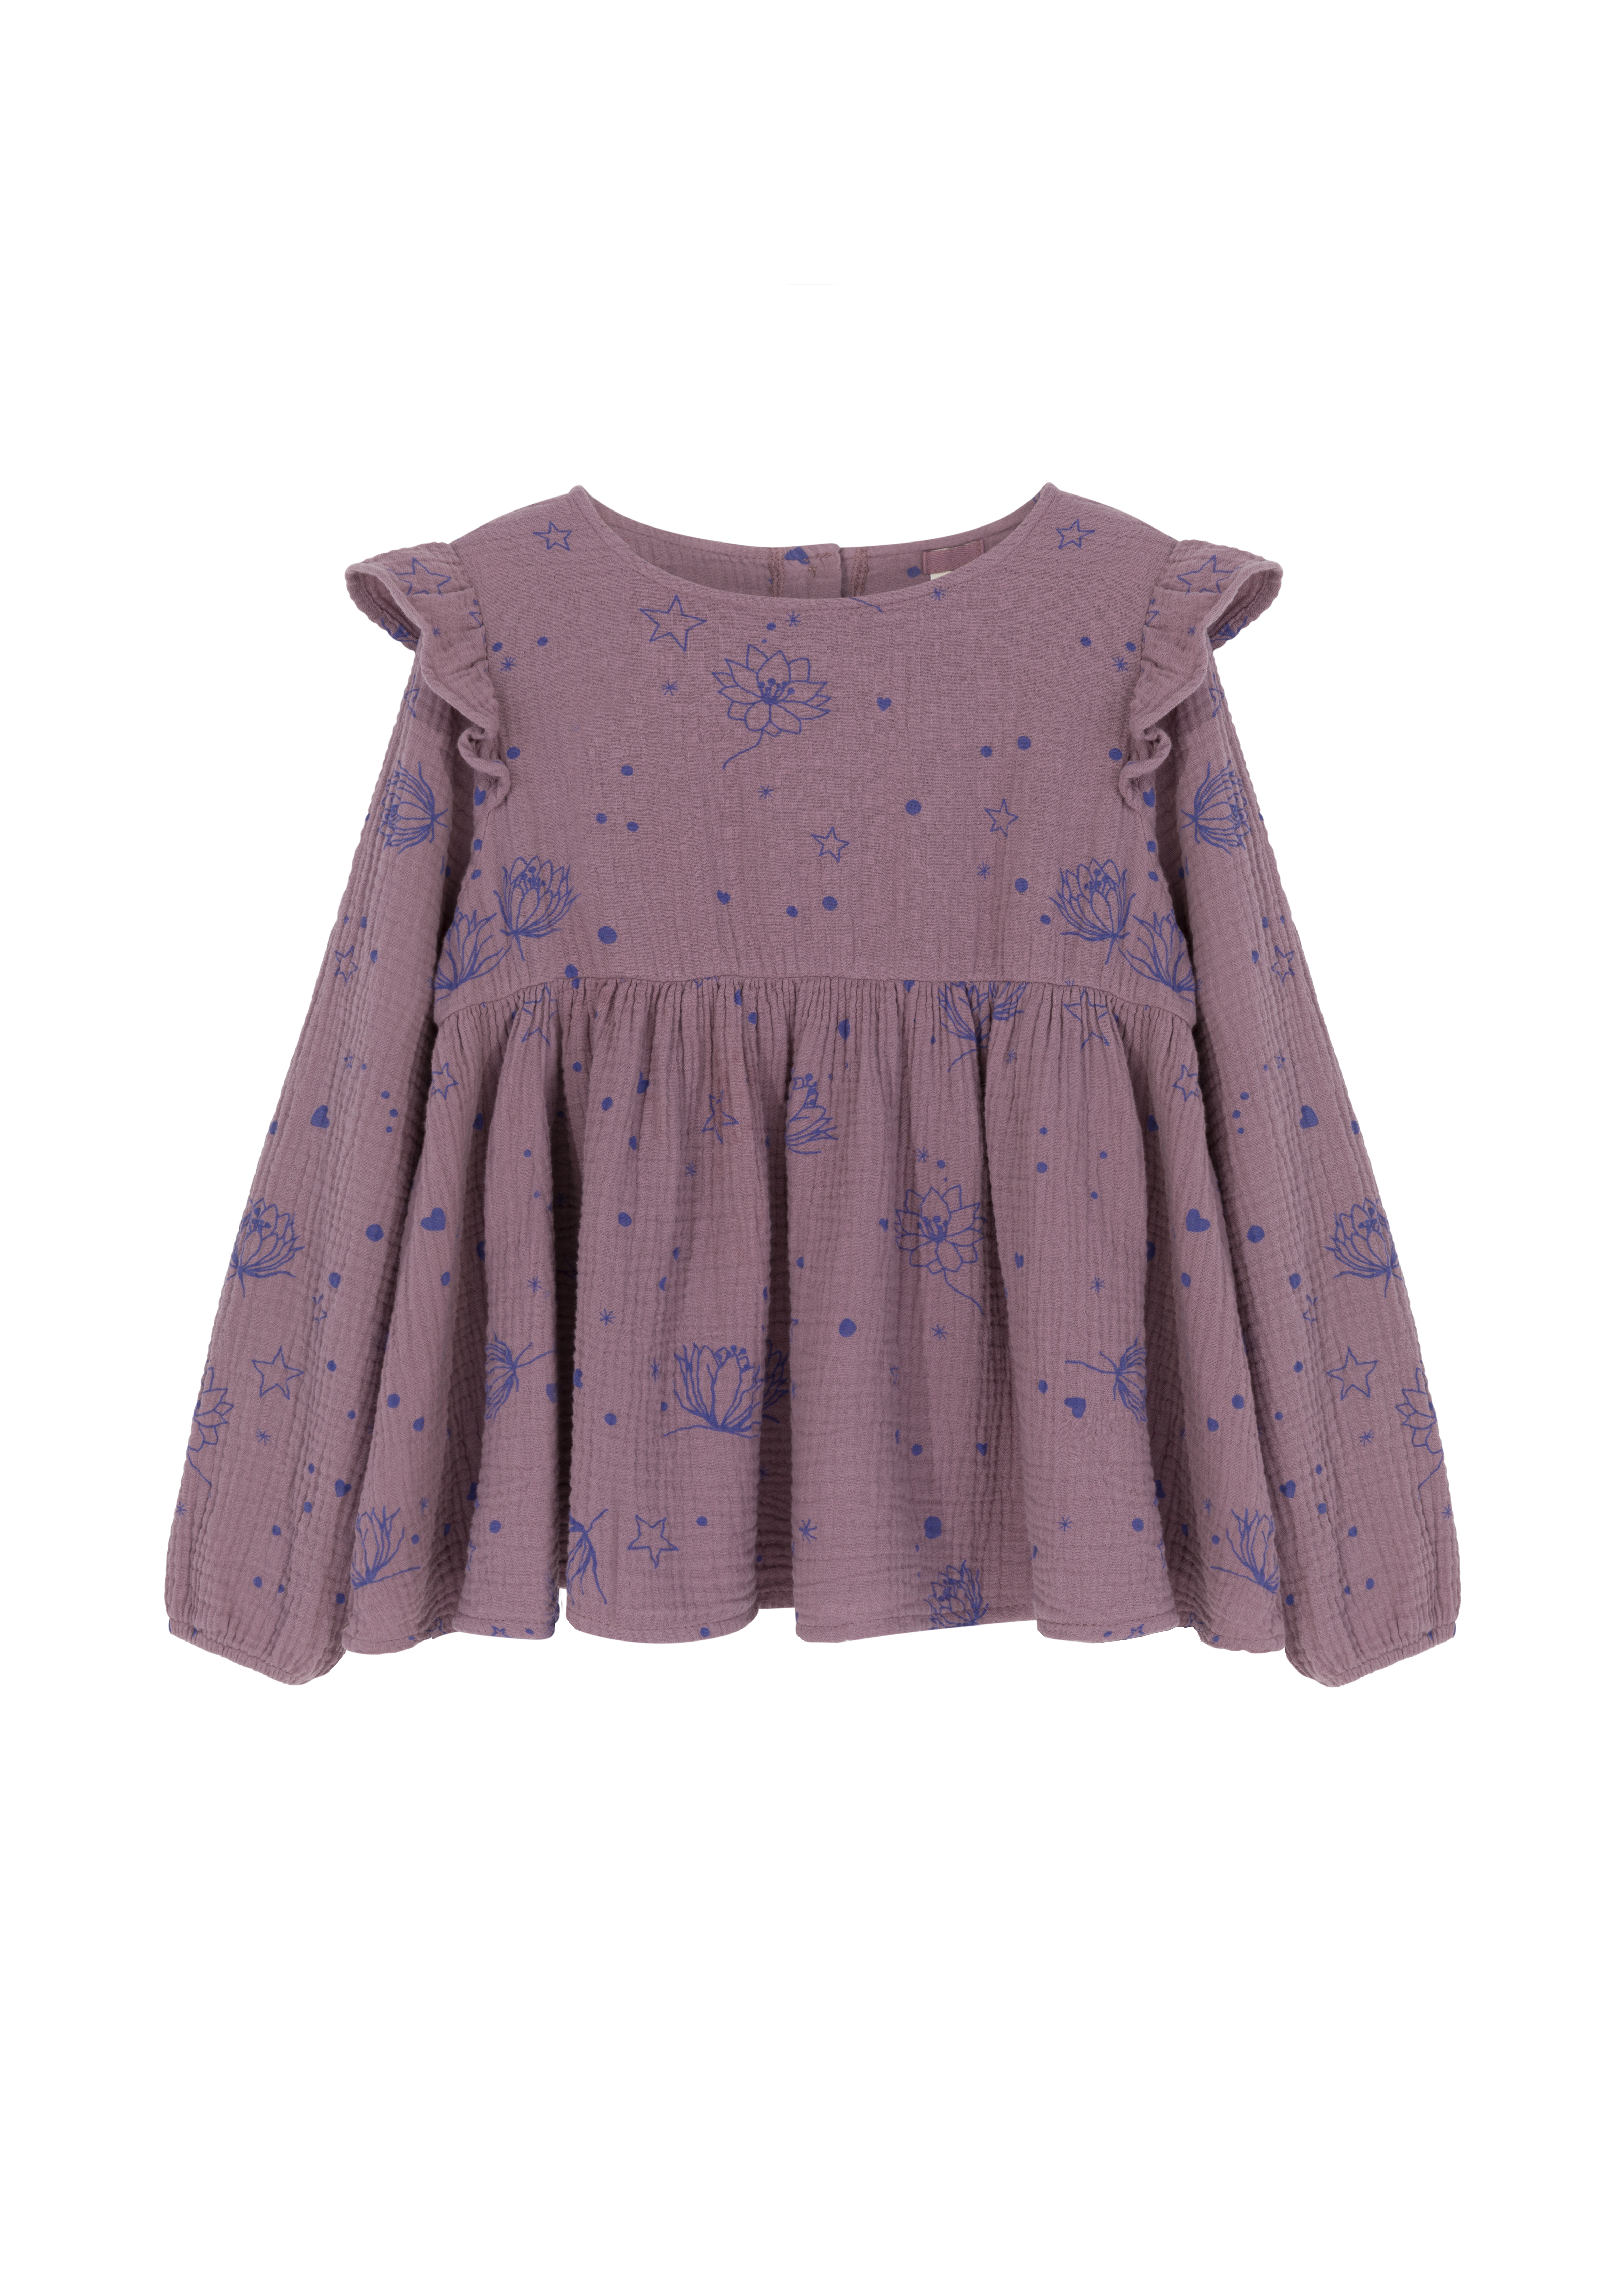 fioletowa bluzka, dla dzieci, bluzka z falbankami, bluzka we wzory, bluzka z bawełny organicznej, organic cotton blouse, purple blouse, for kids